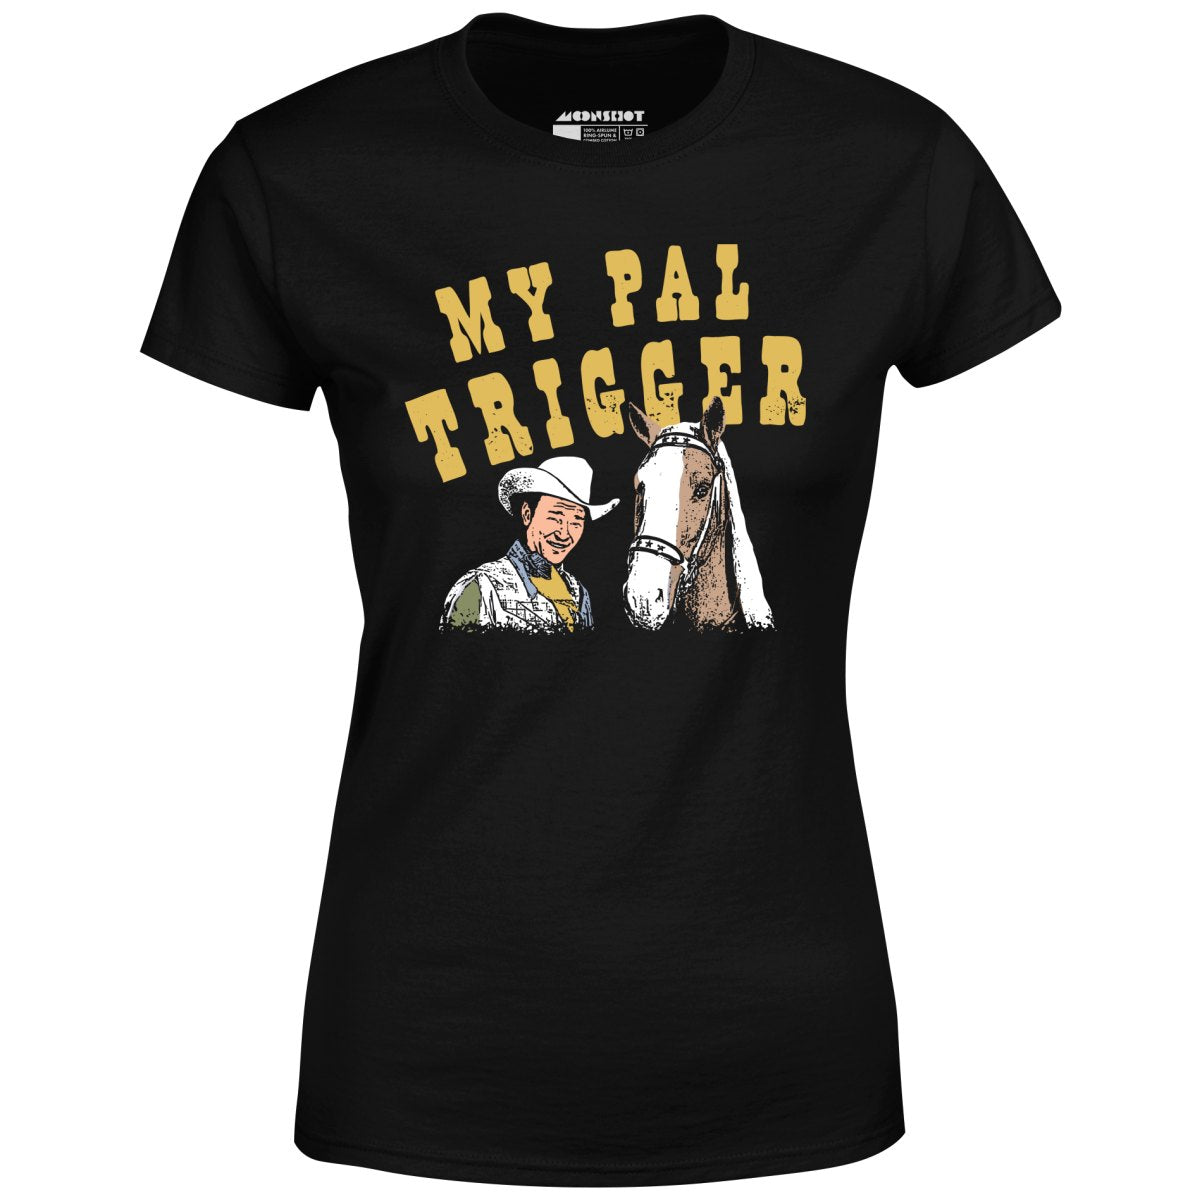 My Pal Trigger - Women's T-Shirt